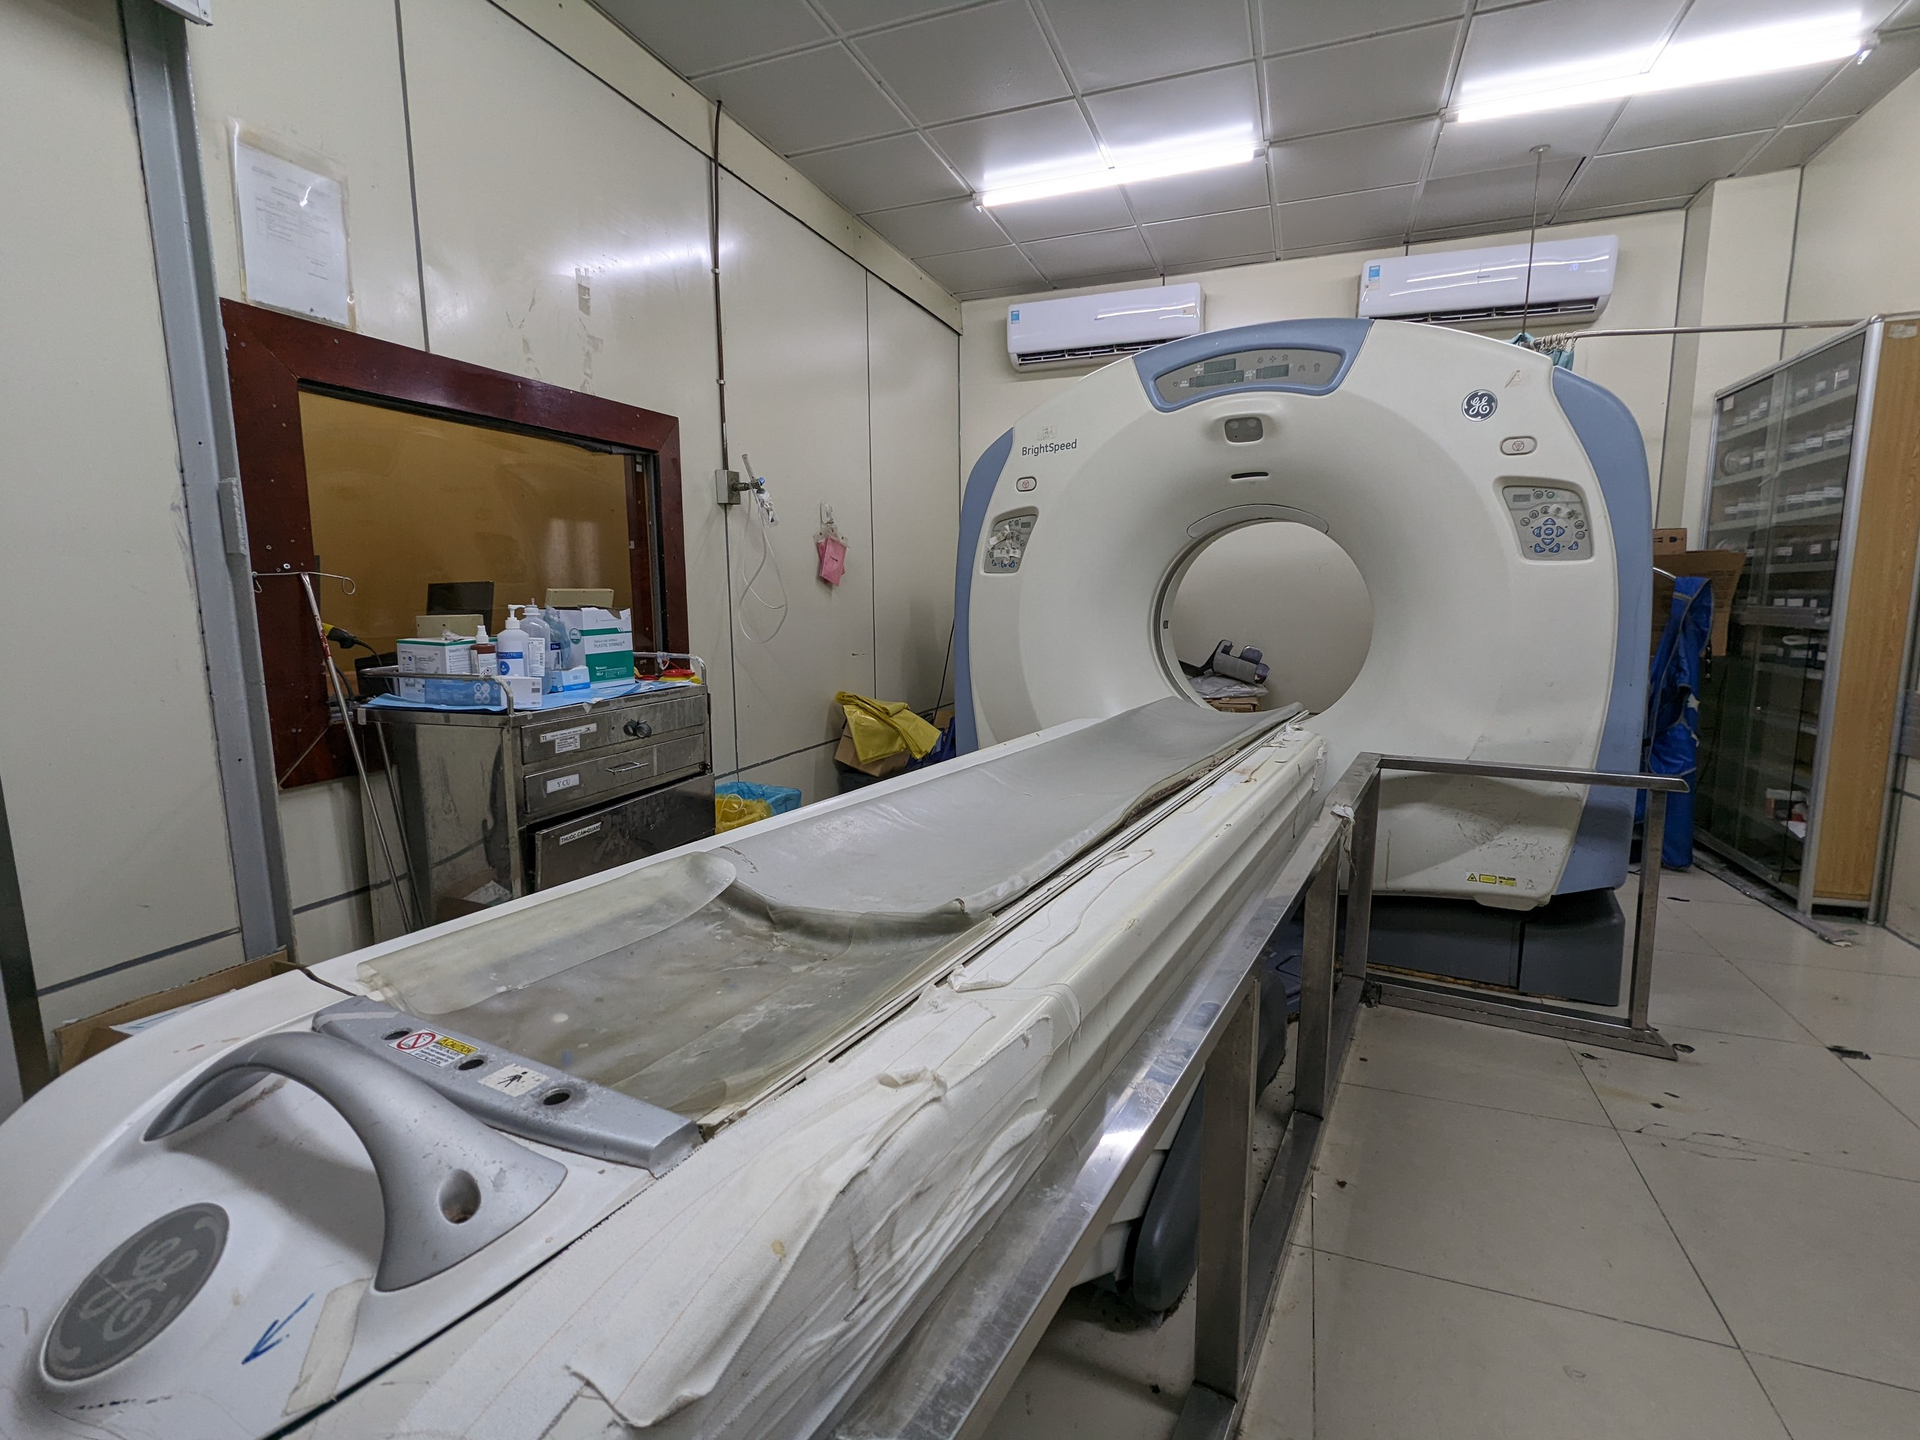 Tại Bệnh viện Chợ Rẫy, do không có đủ 3 báo giá theo quy định để đấu thầu mua sắm mới, cũng như sửa chữa, bảo trì nên chỉ có 2 trong 5 máy chụp CT đang hoạt động (Ảnh N.L)